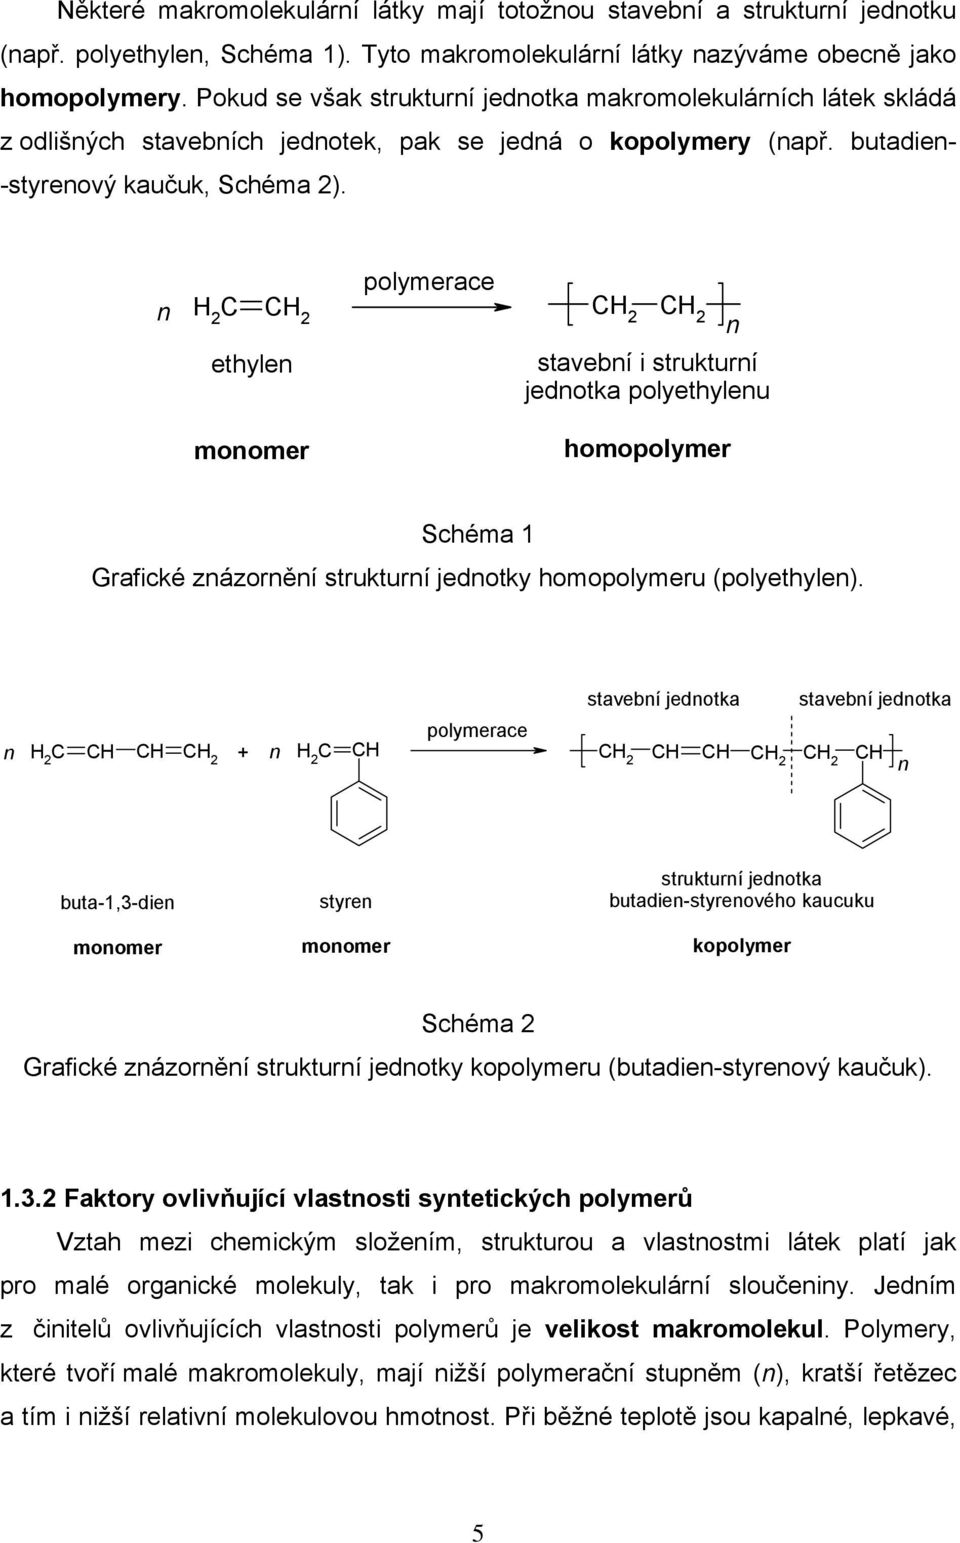 polymerace H 2 C ethyle stavebí i strukturí jedotka polyethyleu moomer homopolymer Schéma 1 Grafické zázorěí strukturí jedotky homopolymeru (polyethyle).